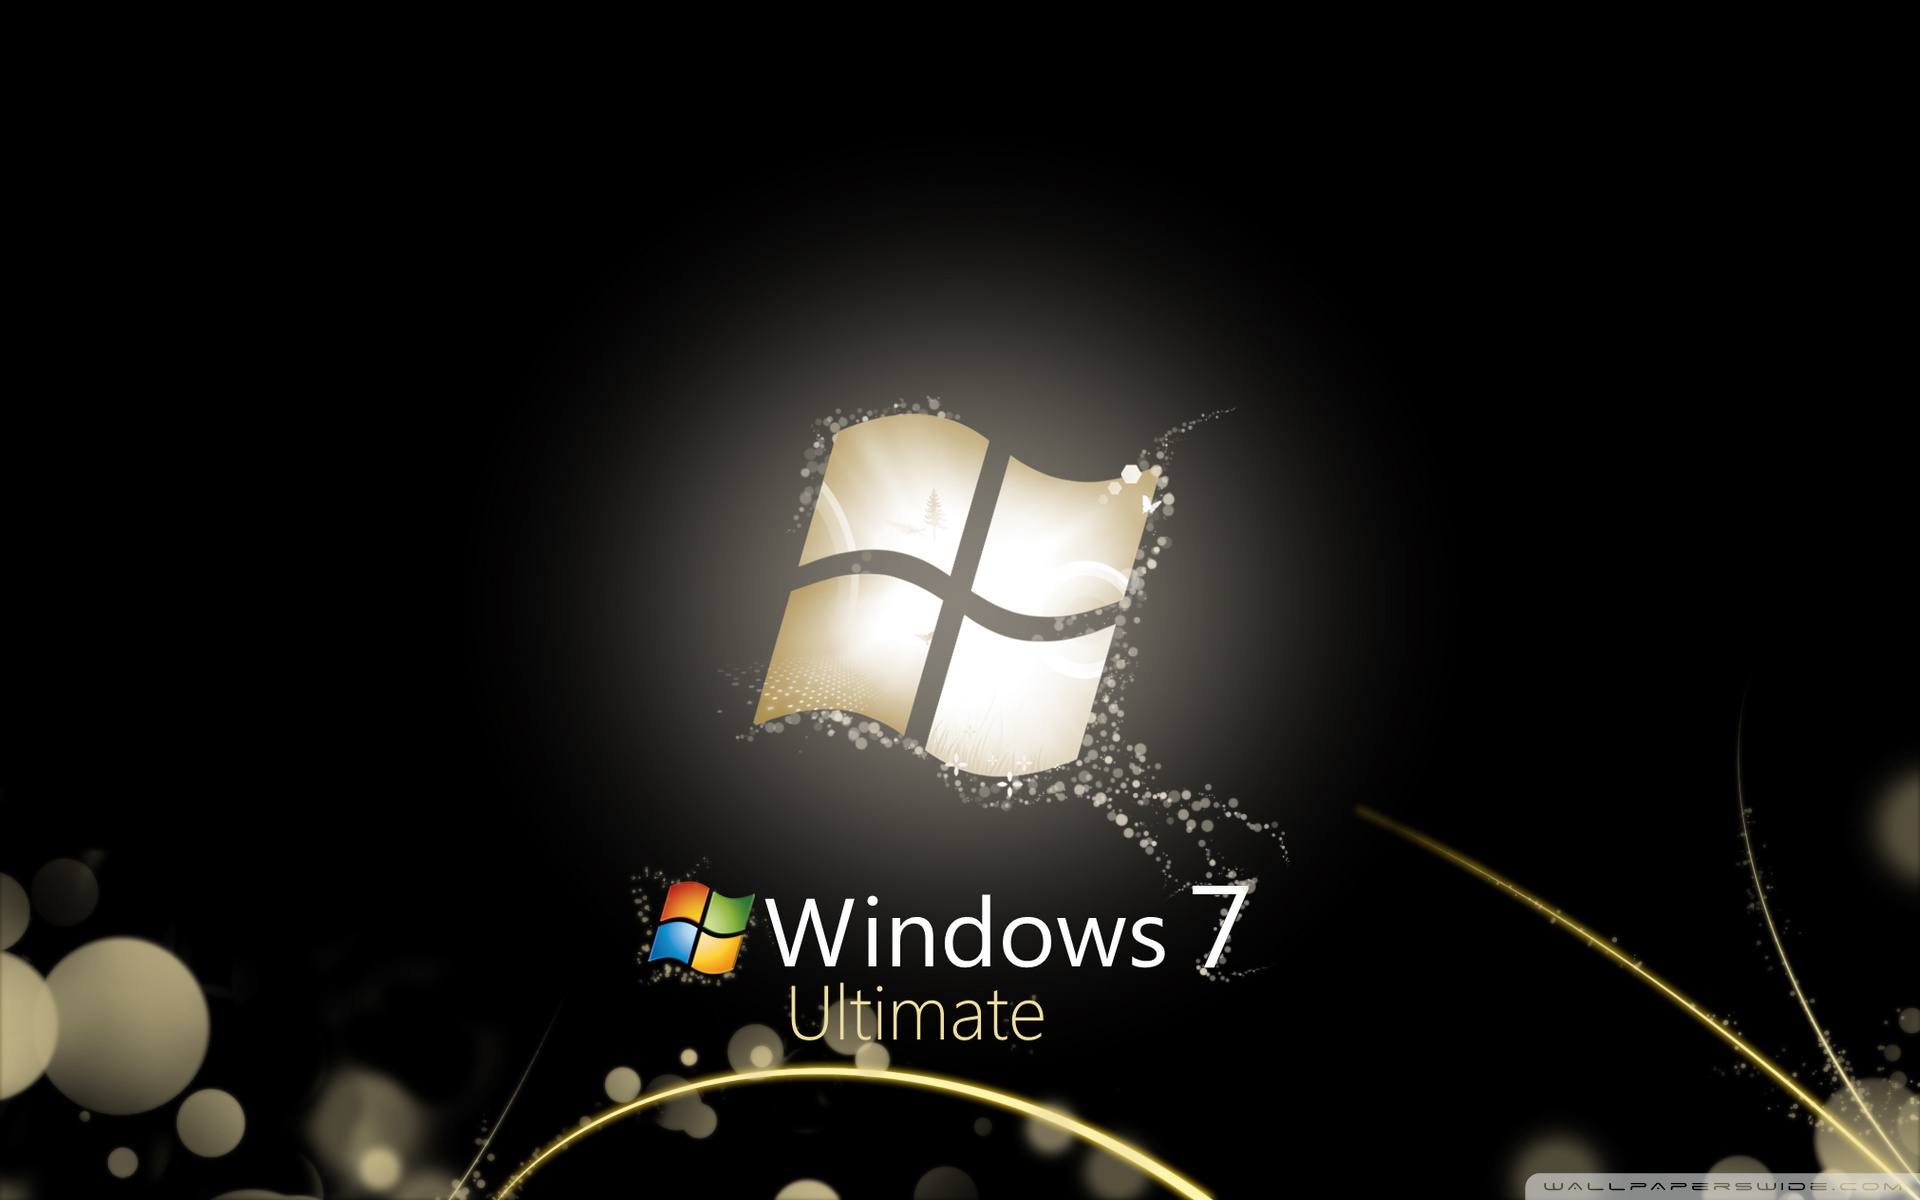 Hình nền Windows 7 Ultimate đen sáng 4K HD: Được thiết kế đặc biệt cho Windows 7 Ultimate, hình nền này tỏa sáng với độ phân giải 4K tuyệt đẹp. Hình ảnh nền đen sáng tạo nên một bầu không khí trang nhã và phong cách, đồng thời cũng cho ta cảm giác yên bình khi nhìn vào màn hình desktop.